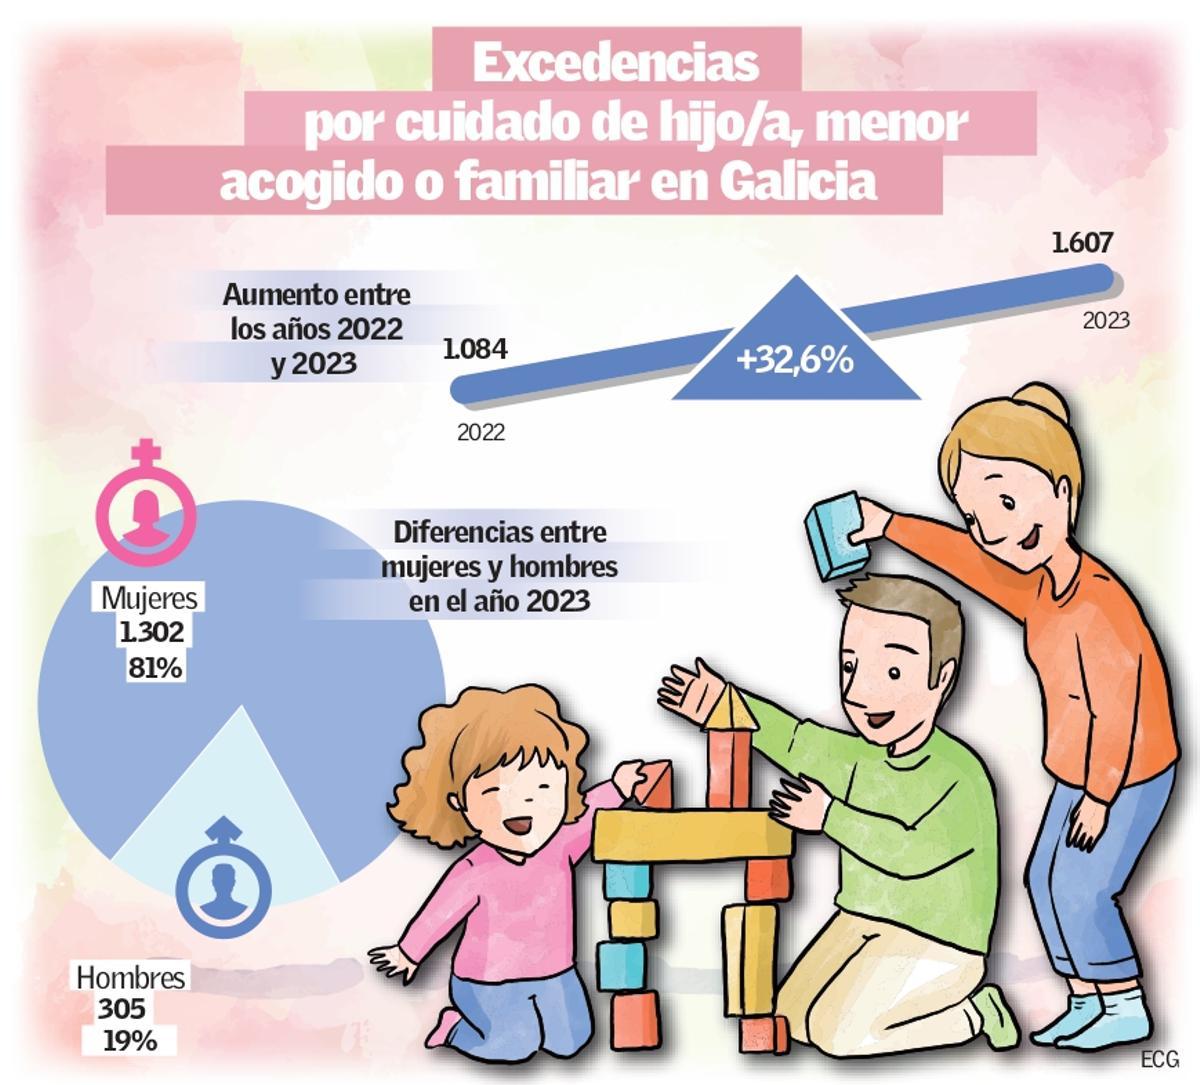 Excedencias por cuidado de hijos o familiares en Galicia durante el 2023